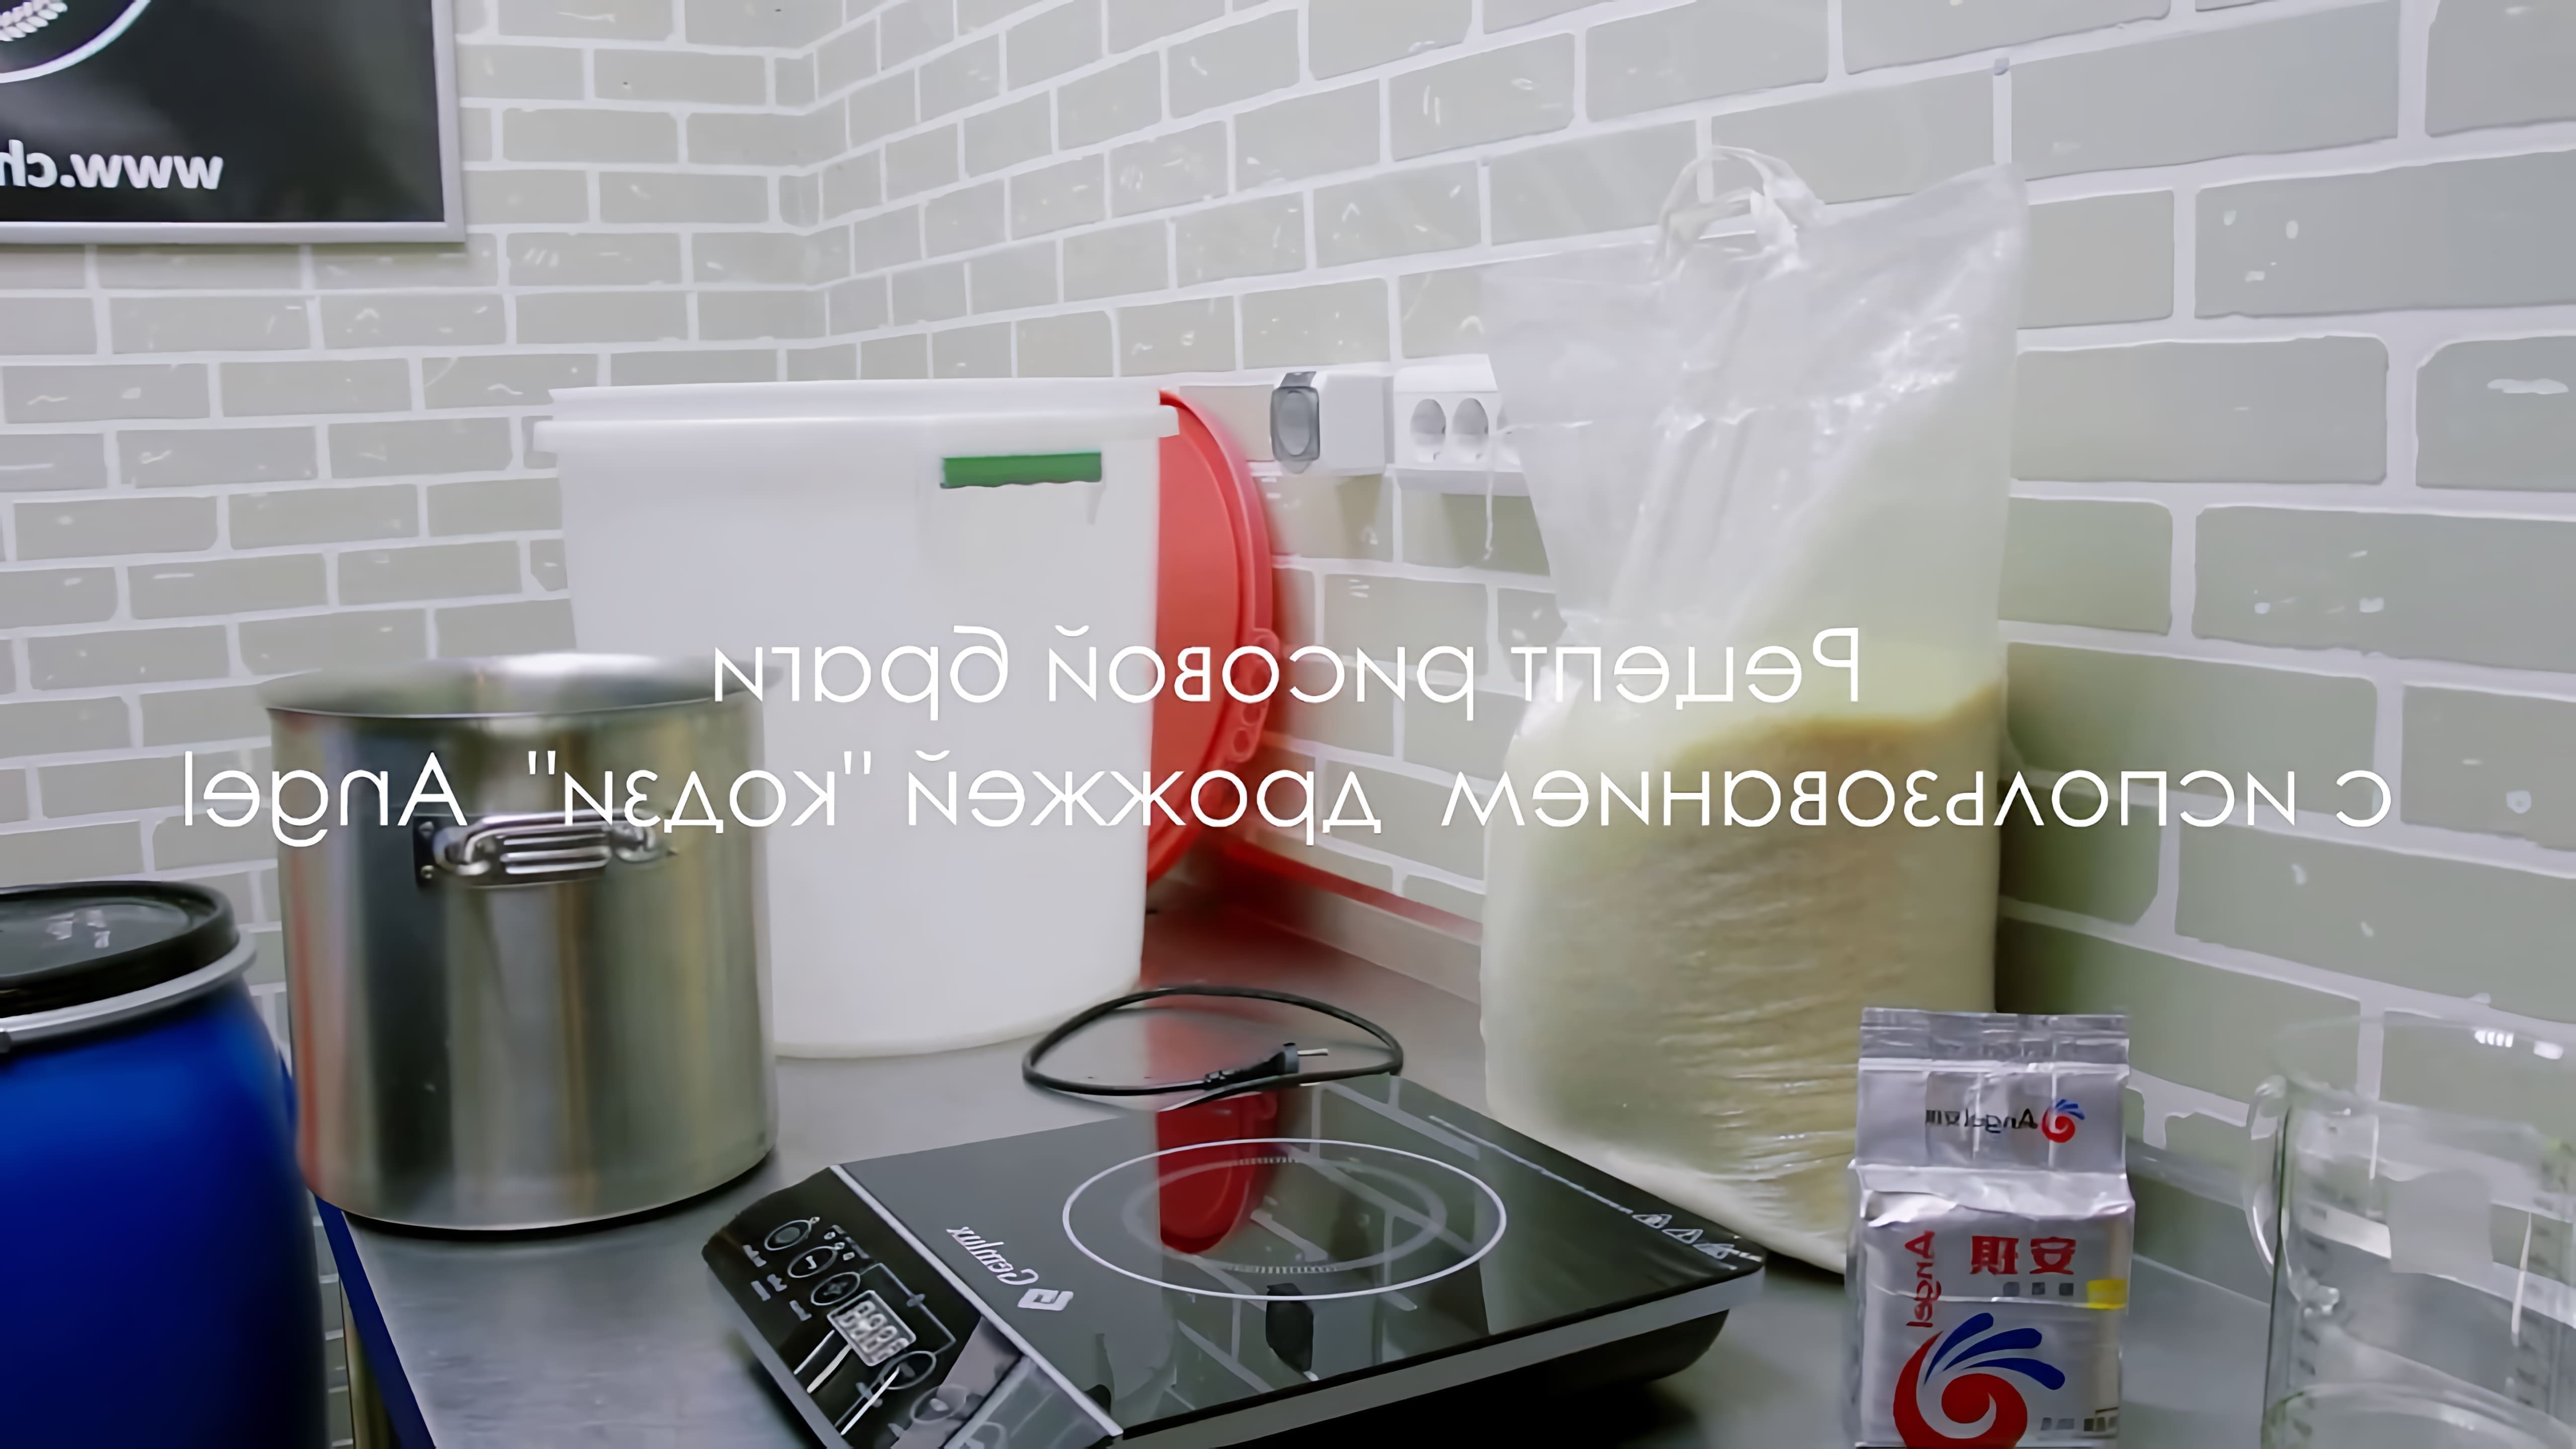 В этом видео демонстрируется процесс приготовления рисовой браги без использования сахара